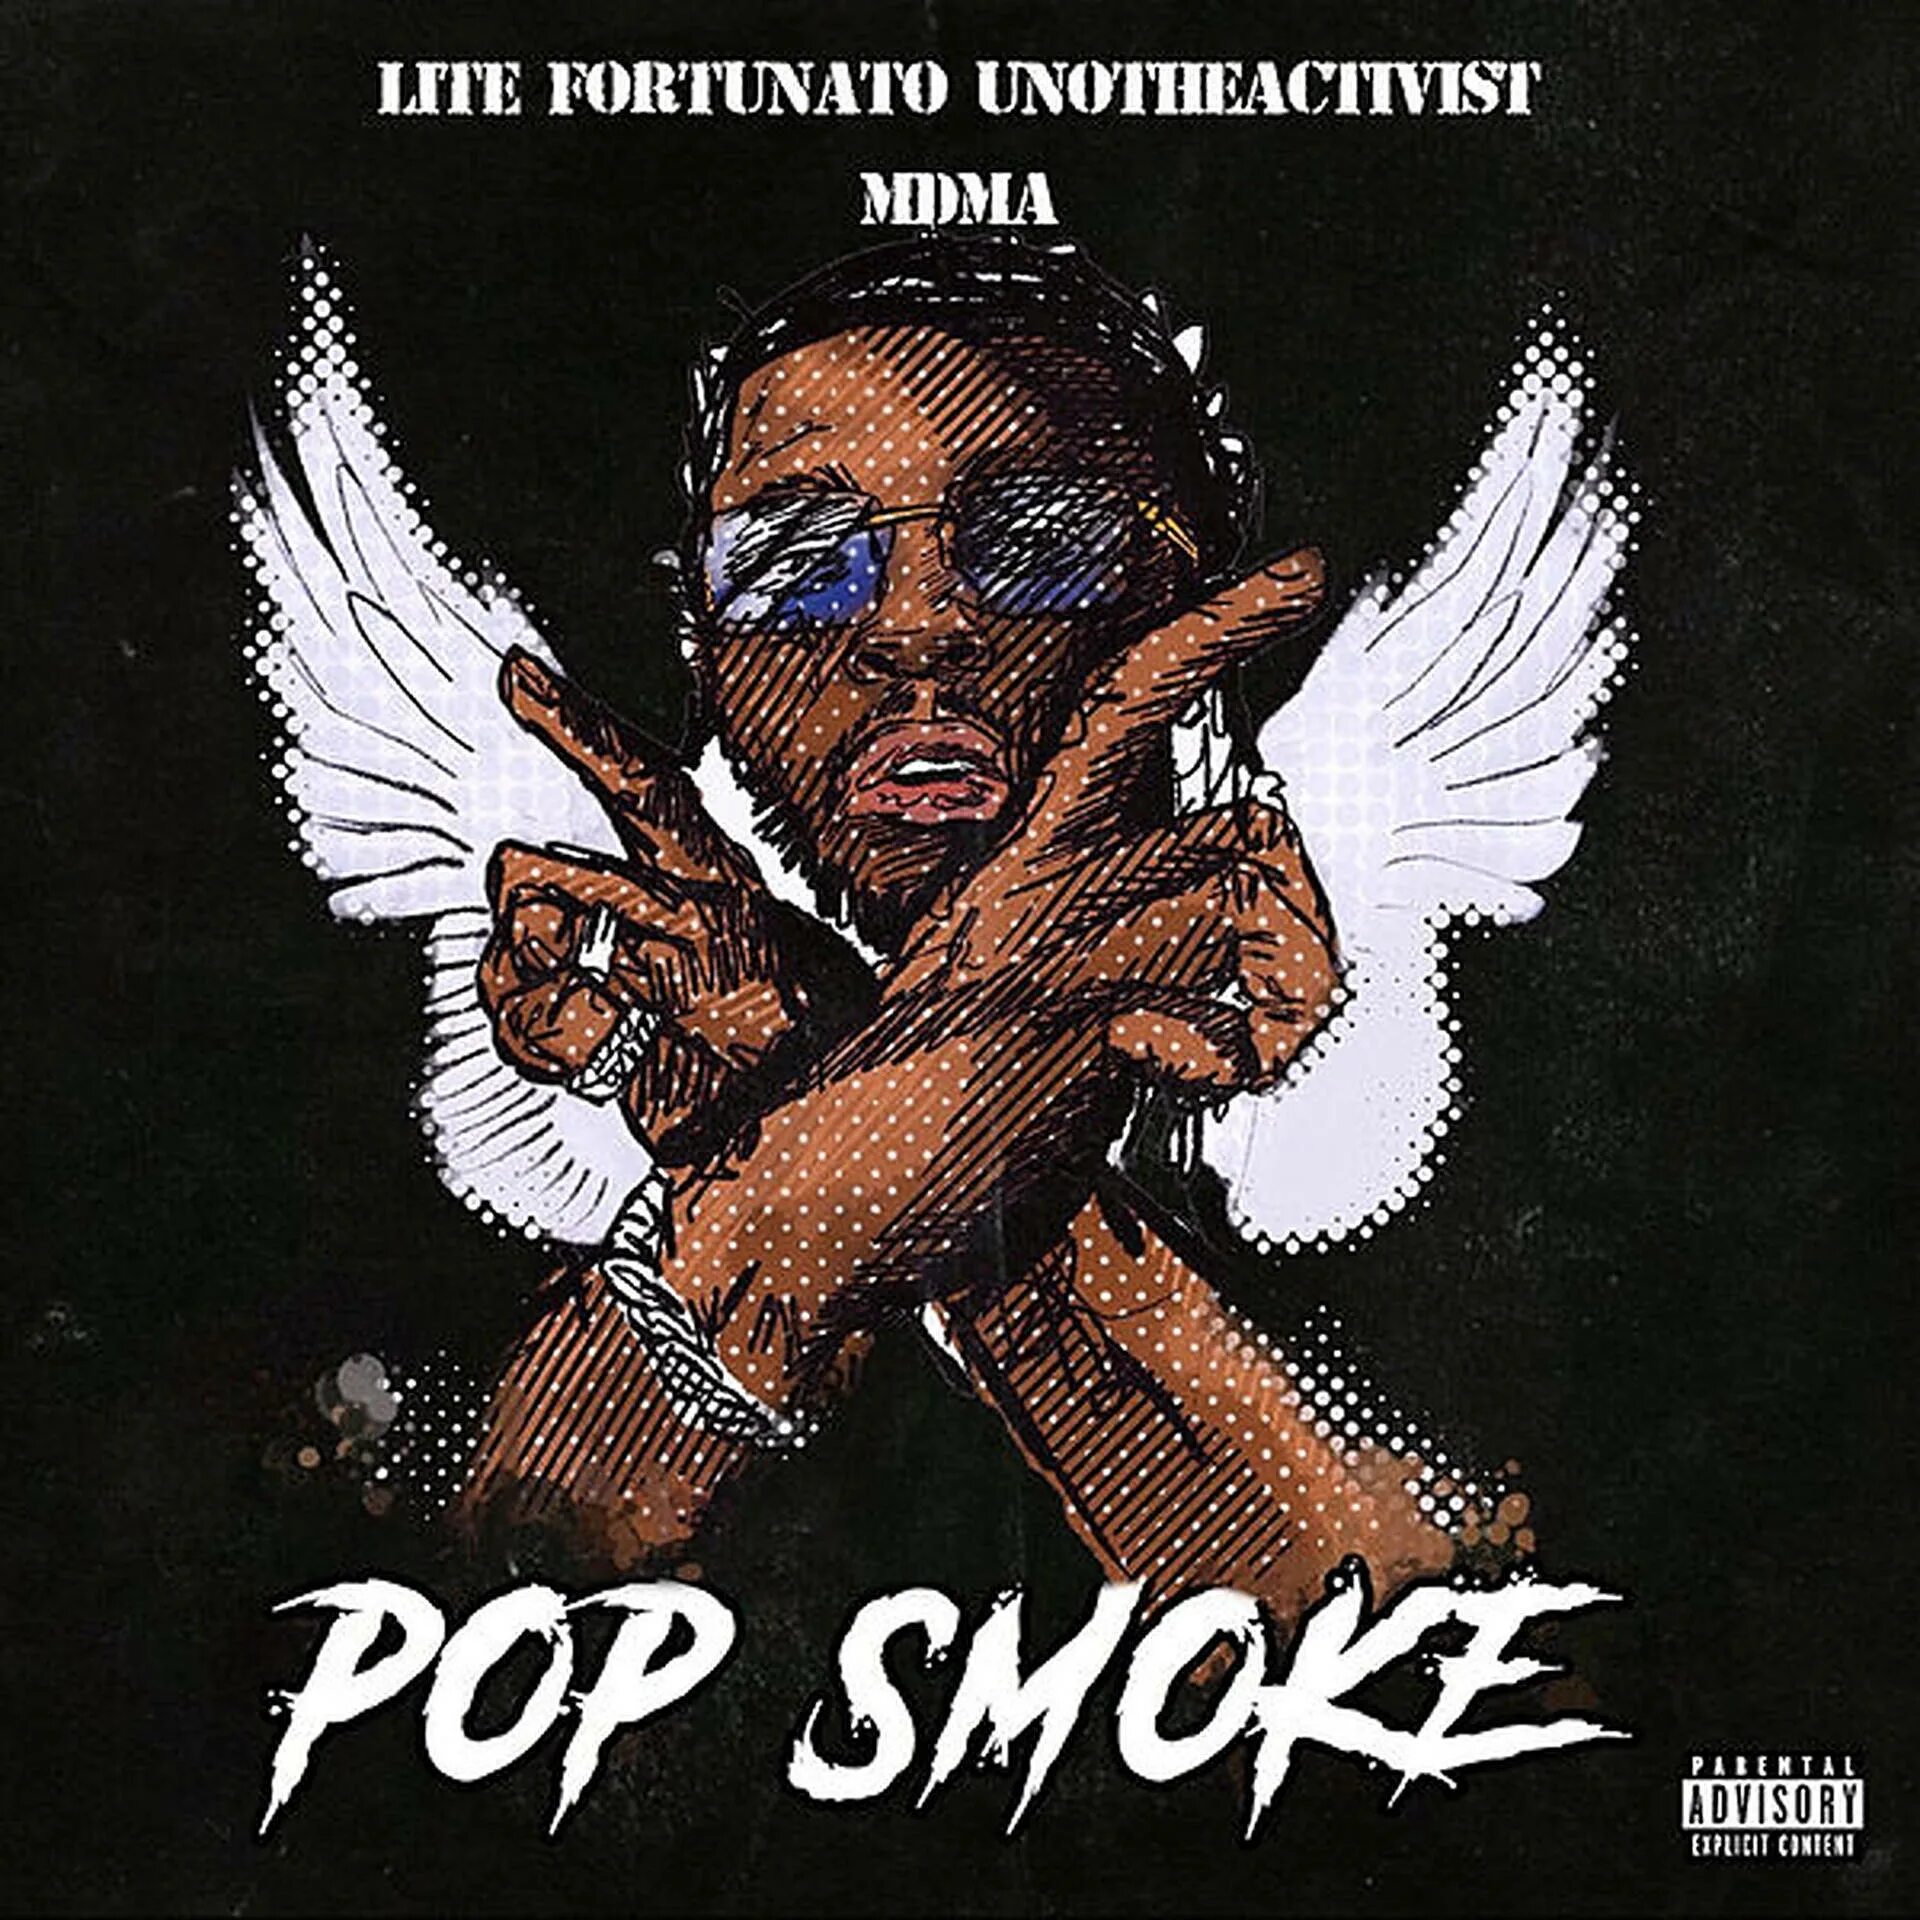 Pop Smoke альбом. Pop Smoke арт. Pop Smoke logo. Pop Smoke Genius.